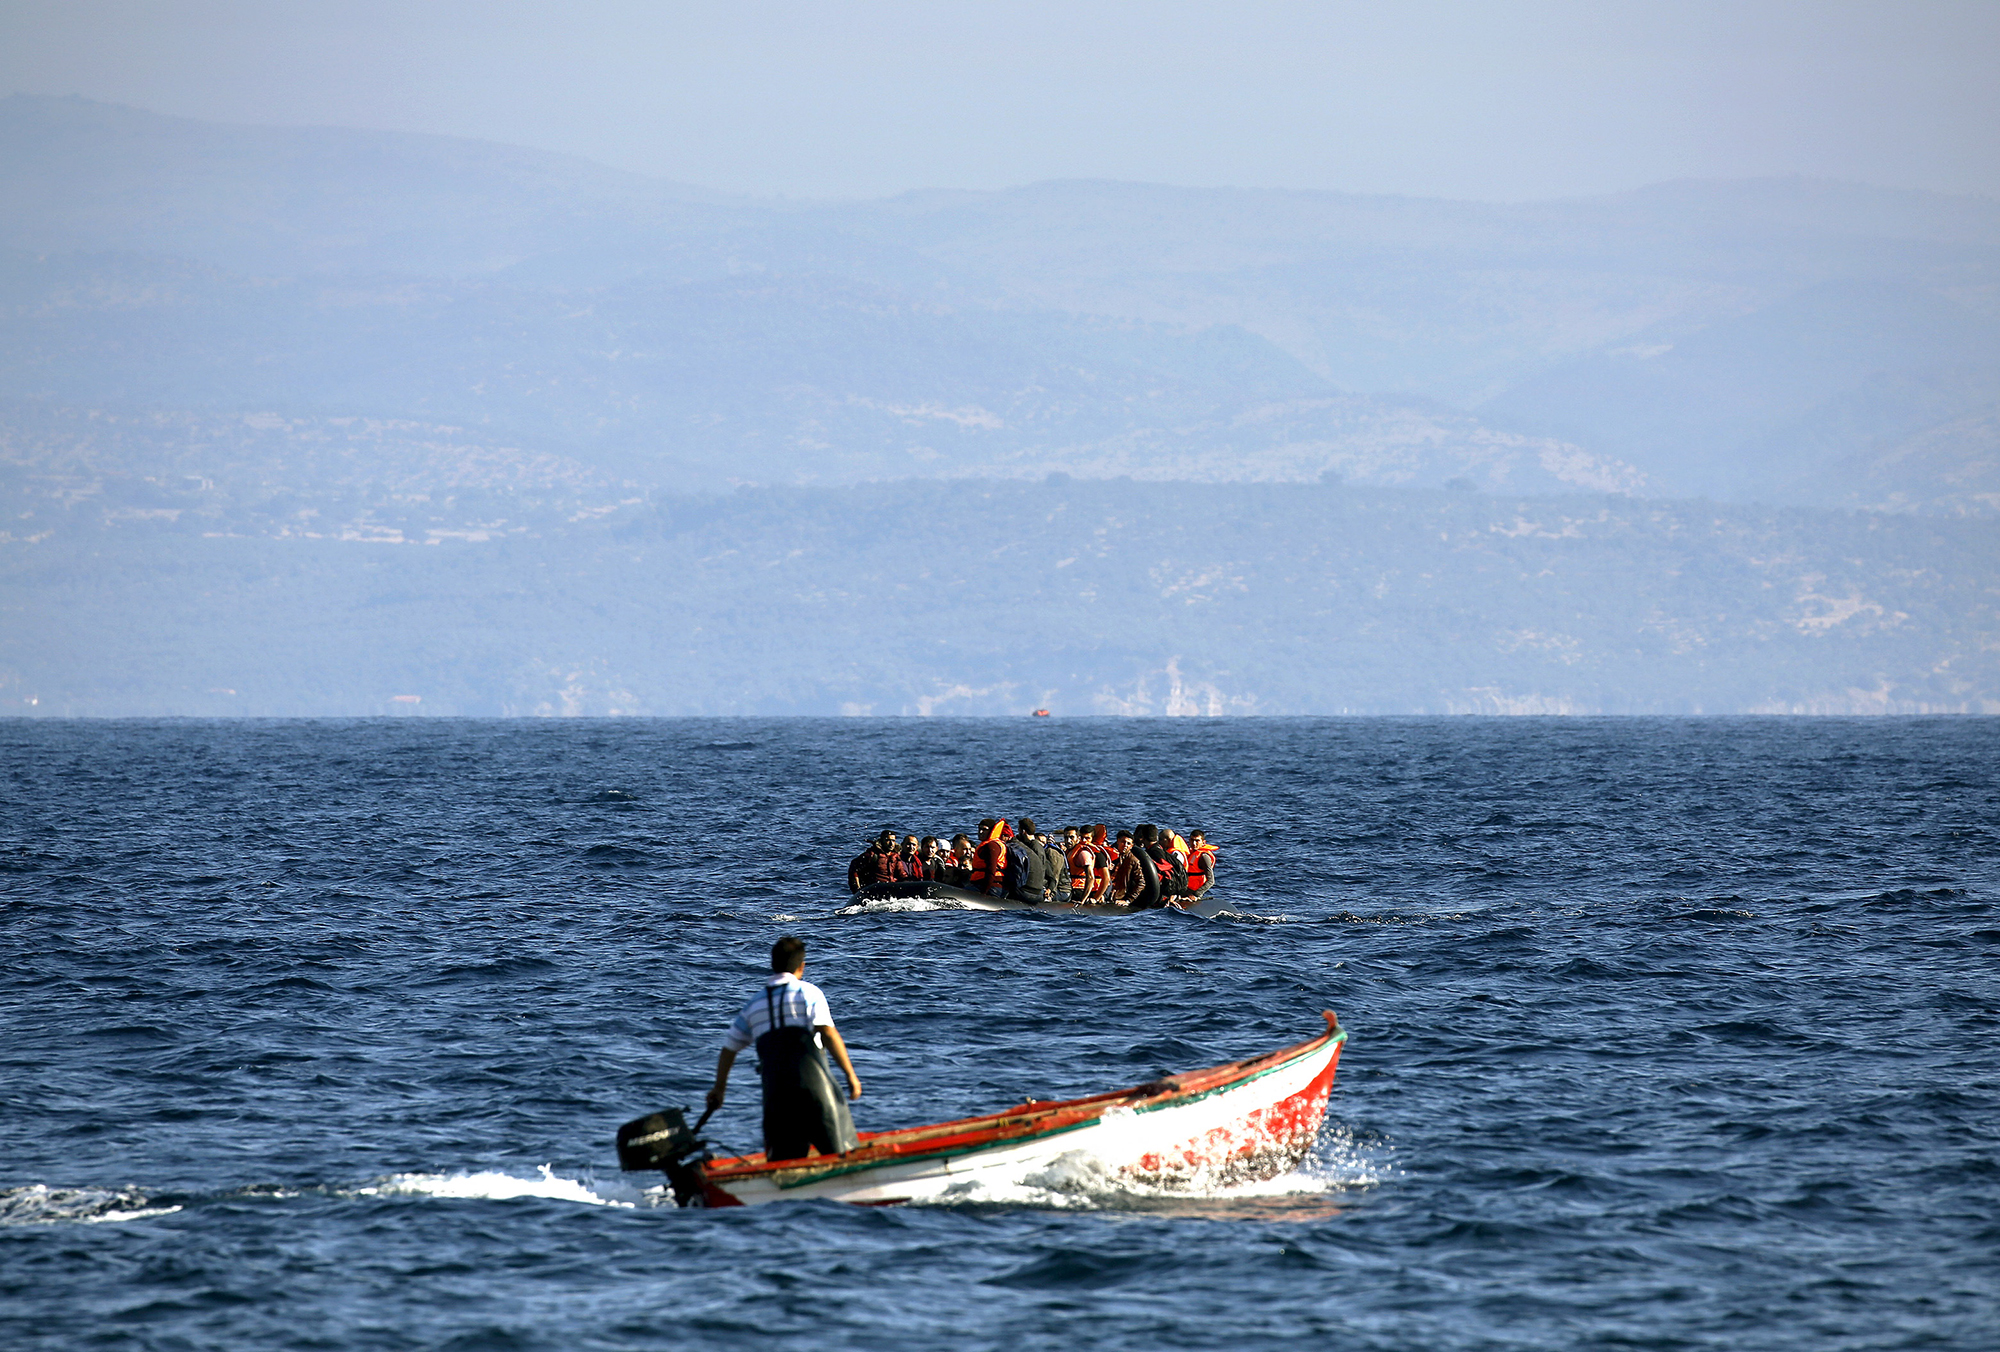 Fischer sind in Griechenland zu Lebensrettern geworden, aber davon haben sie nicht viel – ihr Engagement wird zwar geschätzt, die Touristen bleiben aber aus und Hilfe von der EU ist nicht in Sicht.